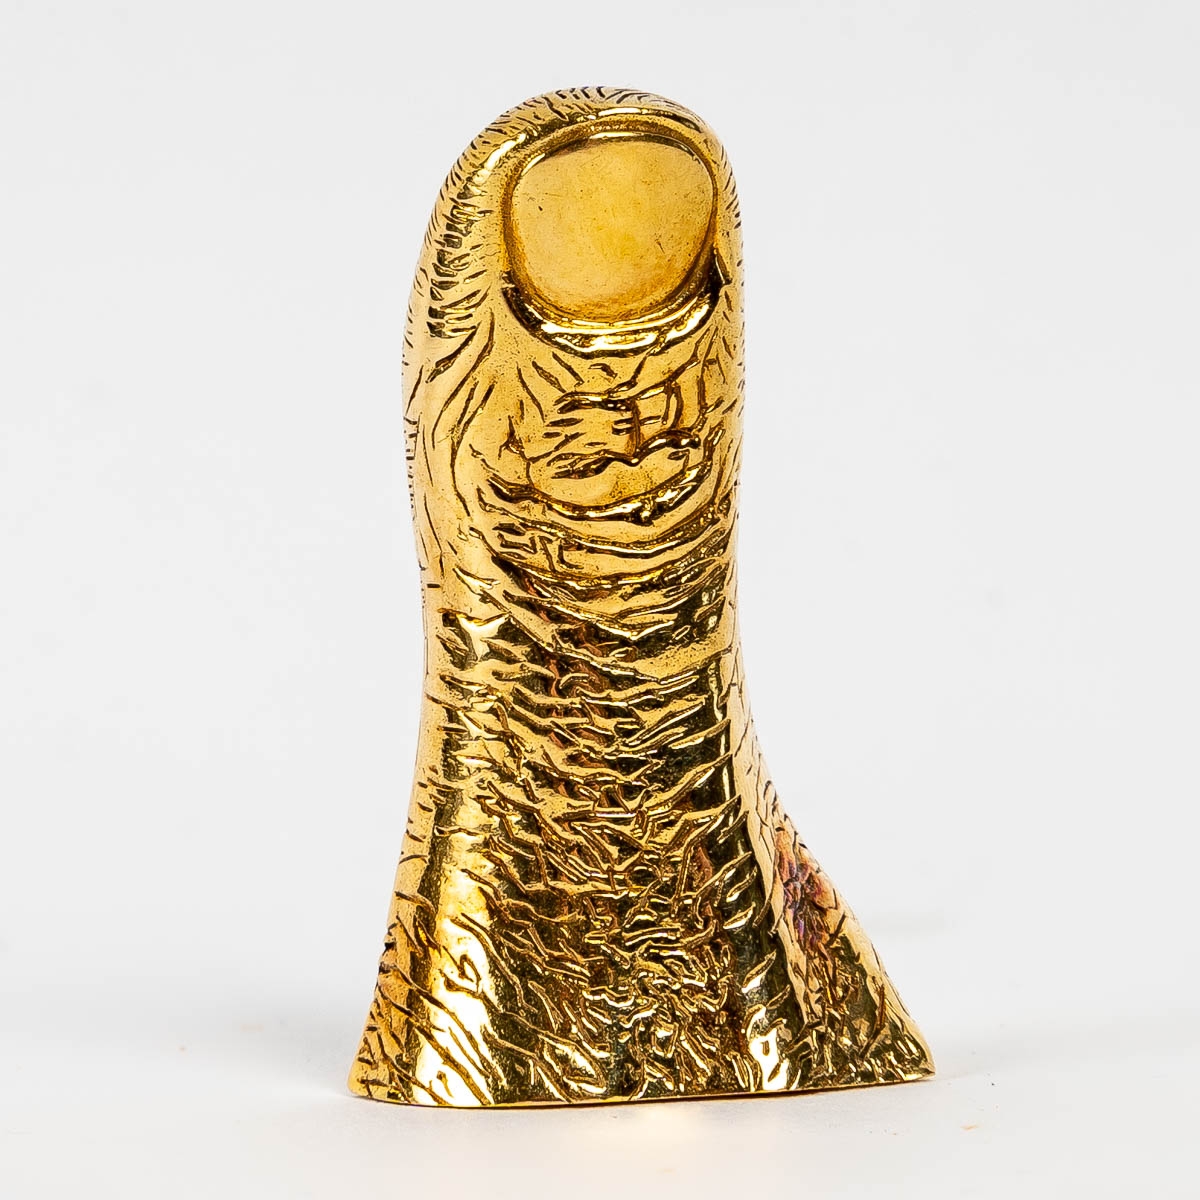 CESAR - Pouce, bronche en bronze doré, 1981|||||||